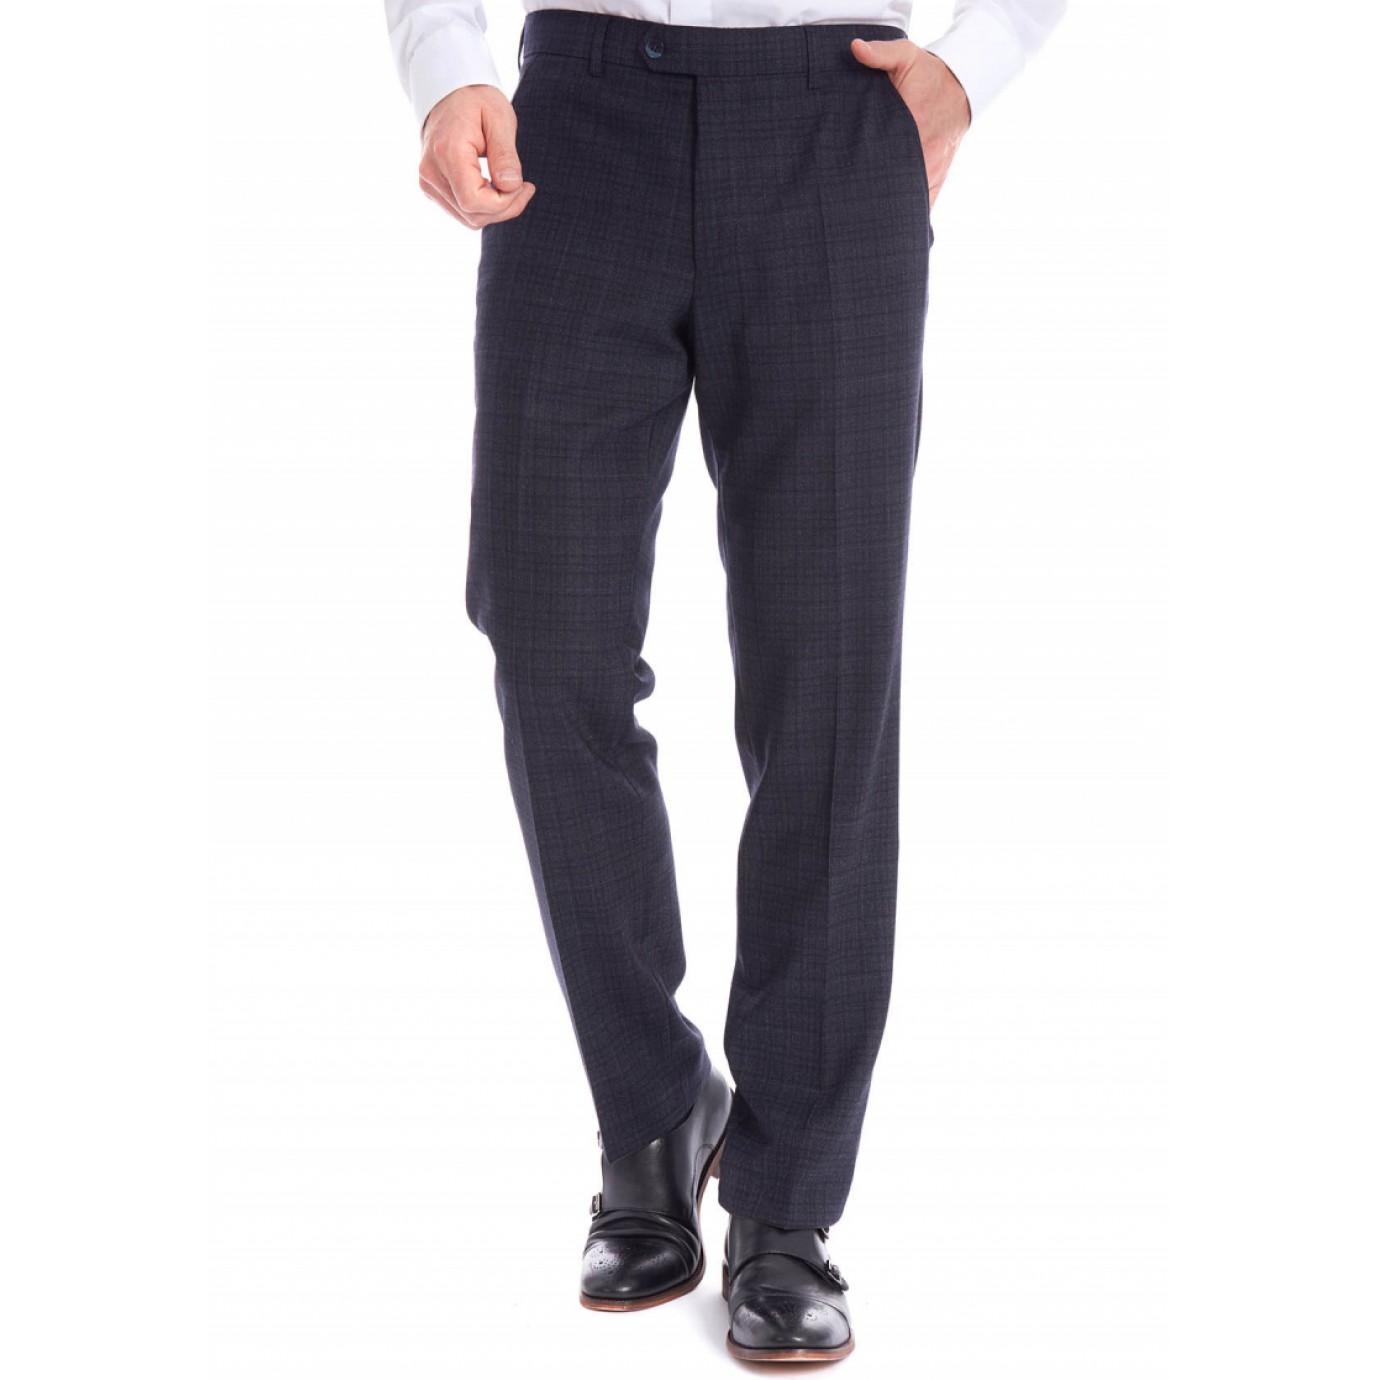 Классические мужские брюки Meyer (Мейер), модель Bonn 6-373/19 синие вклетку. купить в Москве в интернет-магазине SHOP4BIG - цена, фото, описание